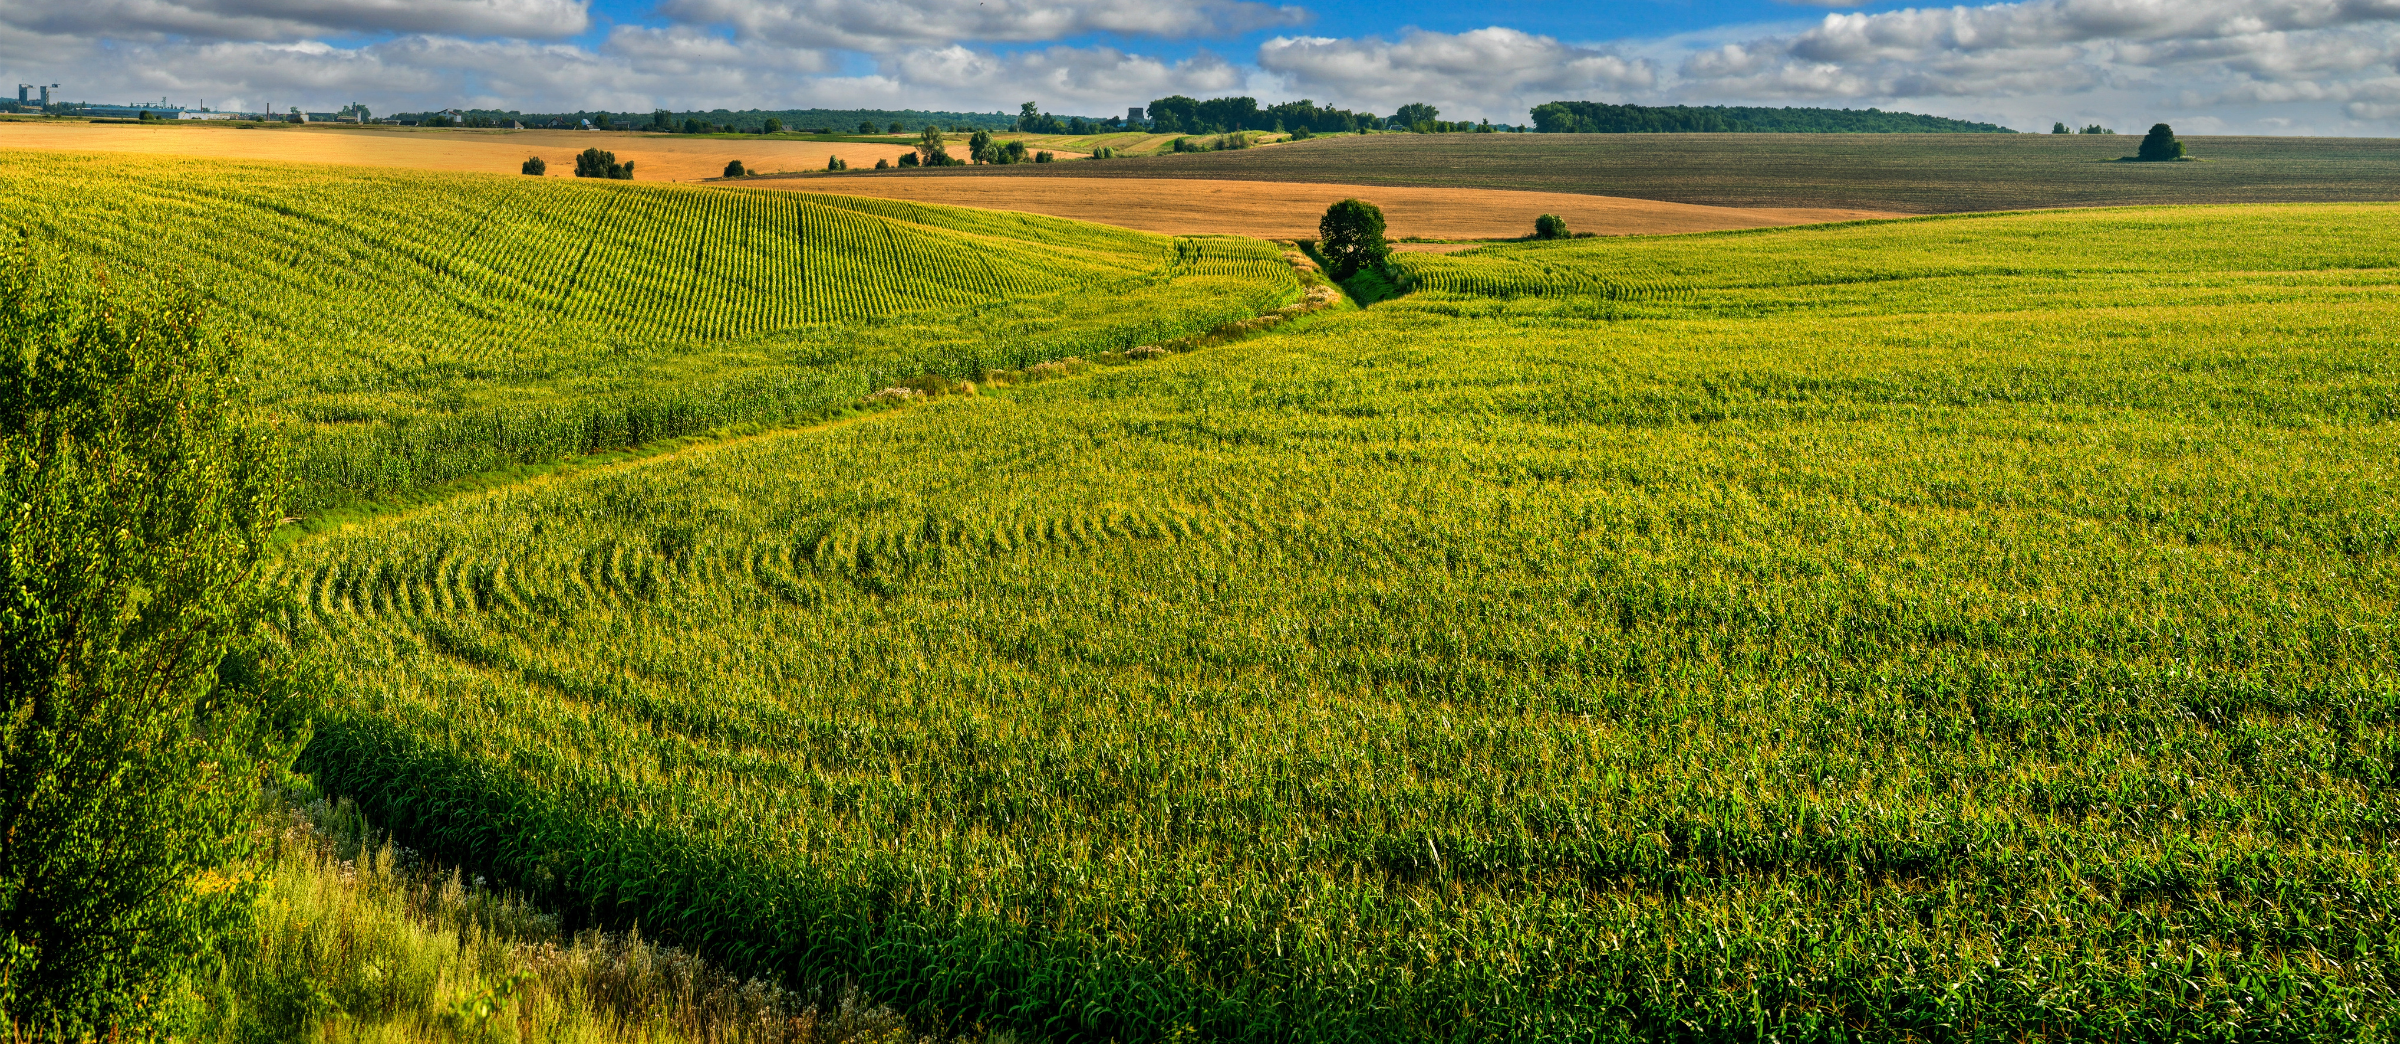 Landscape scene of crop field